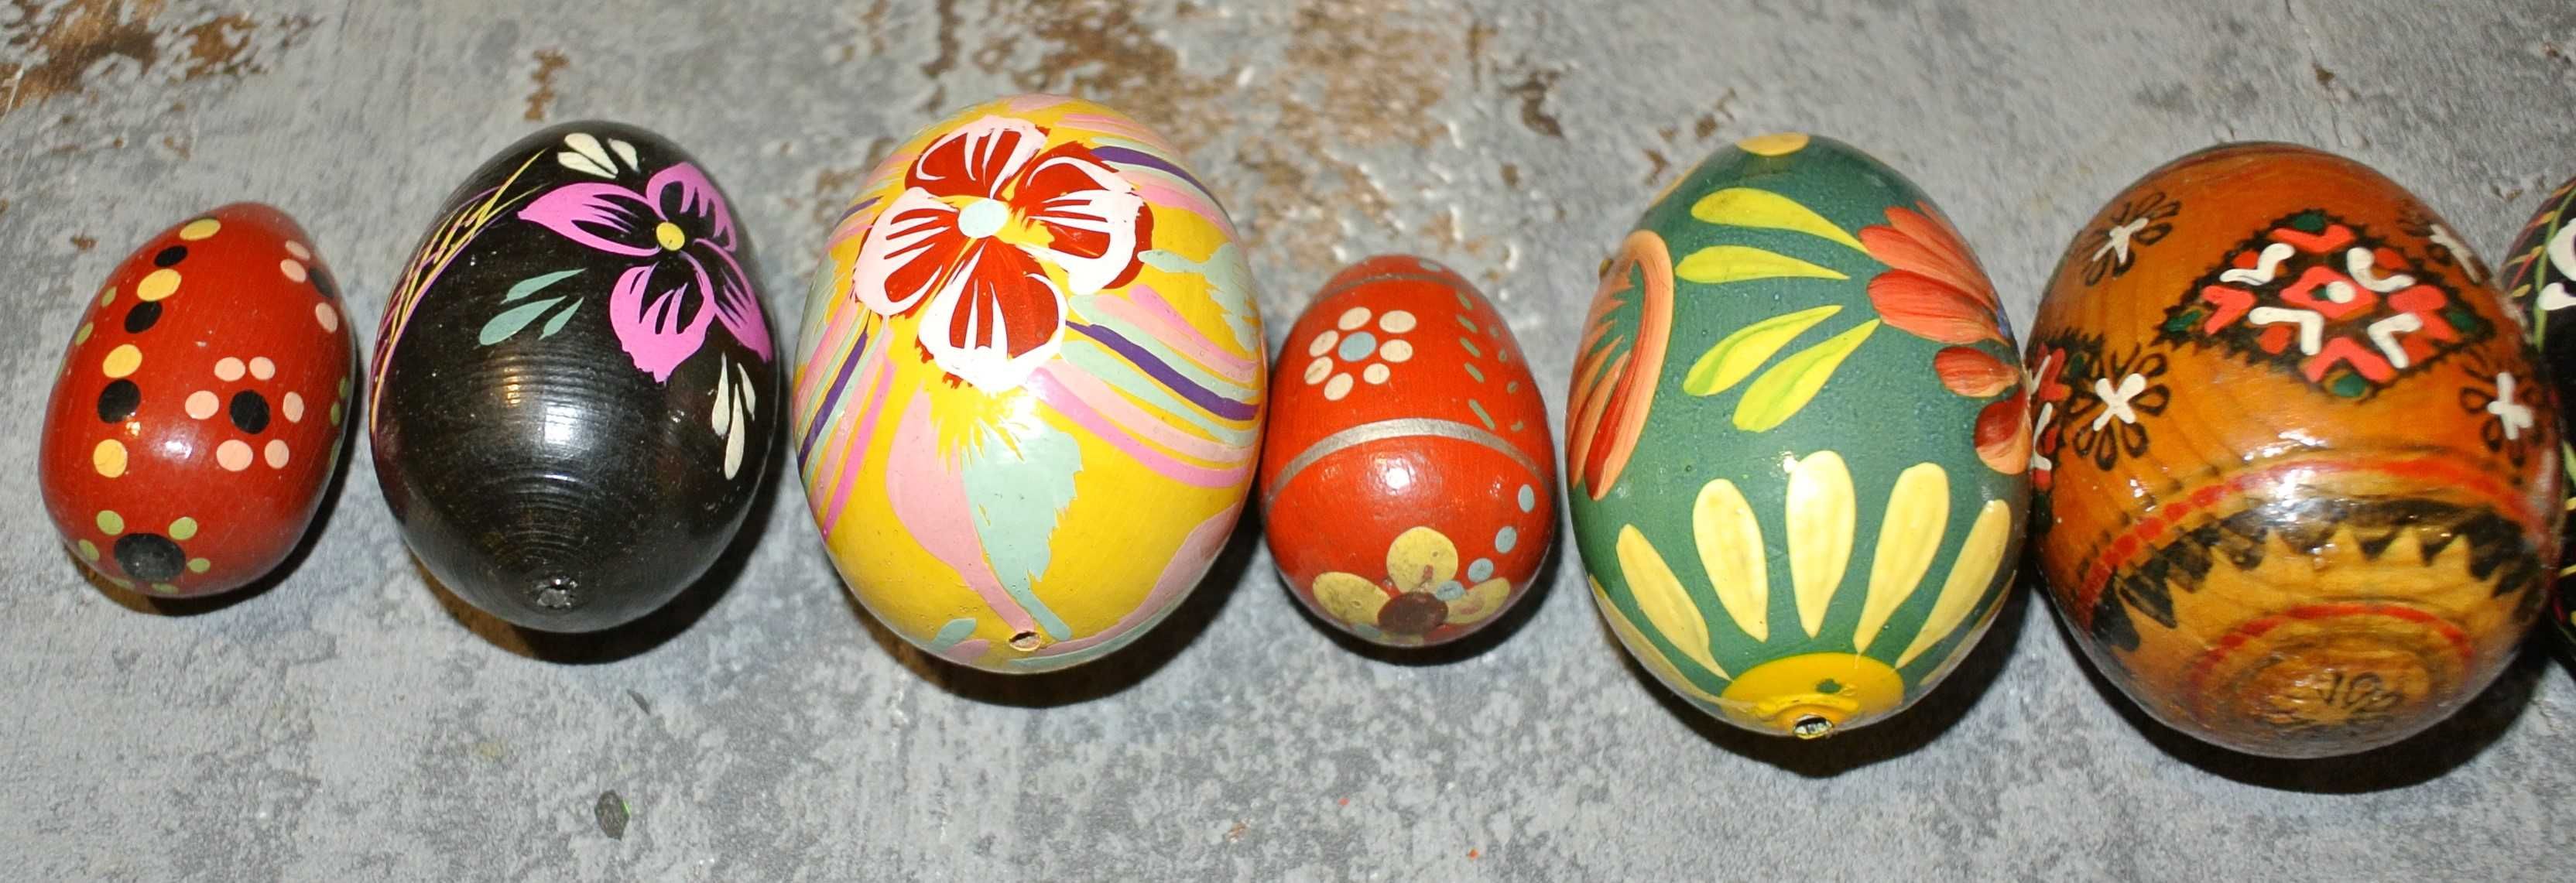 Jaja i jajeczka - pisanki drewniane z czasów PRL - zestaw